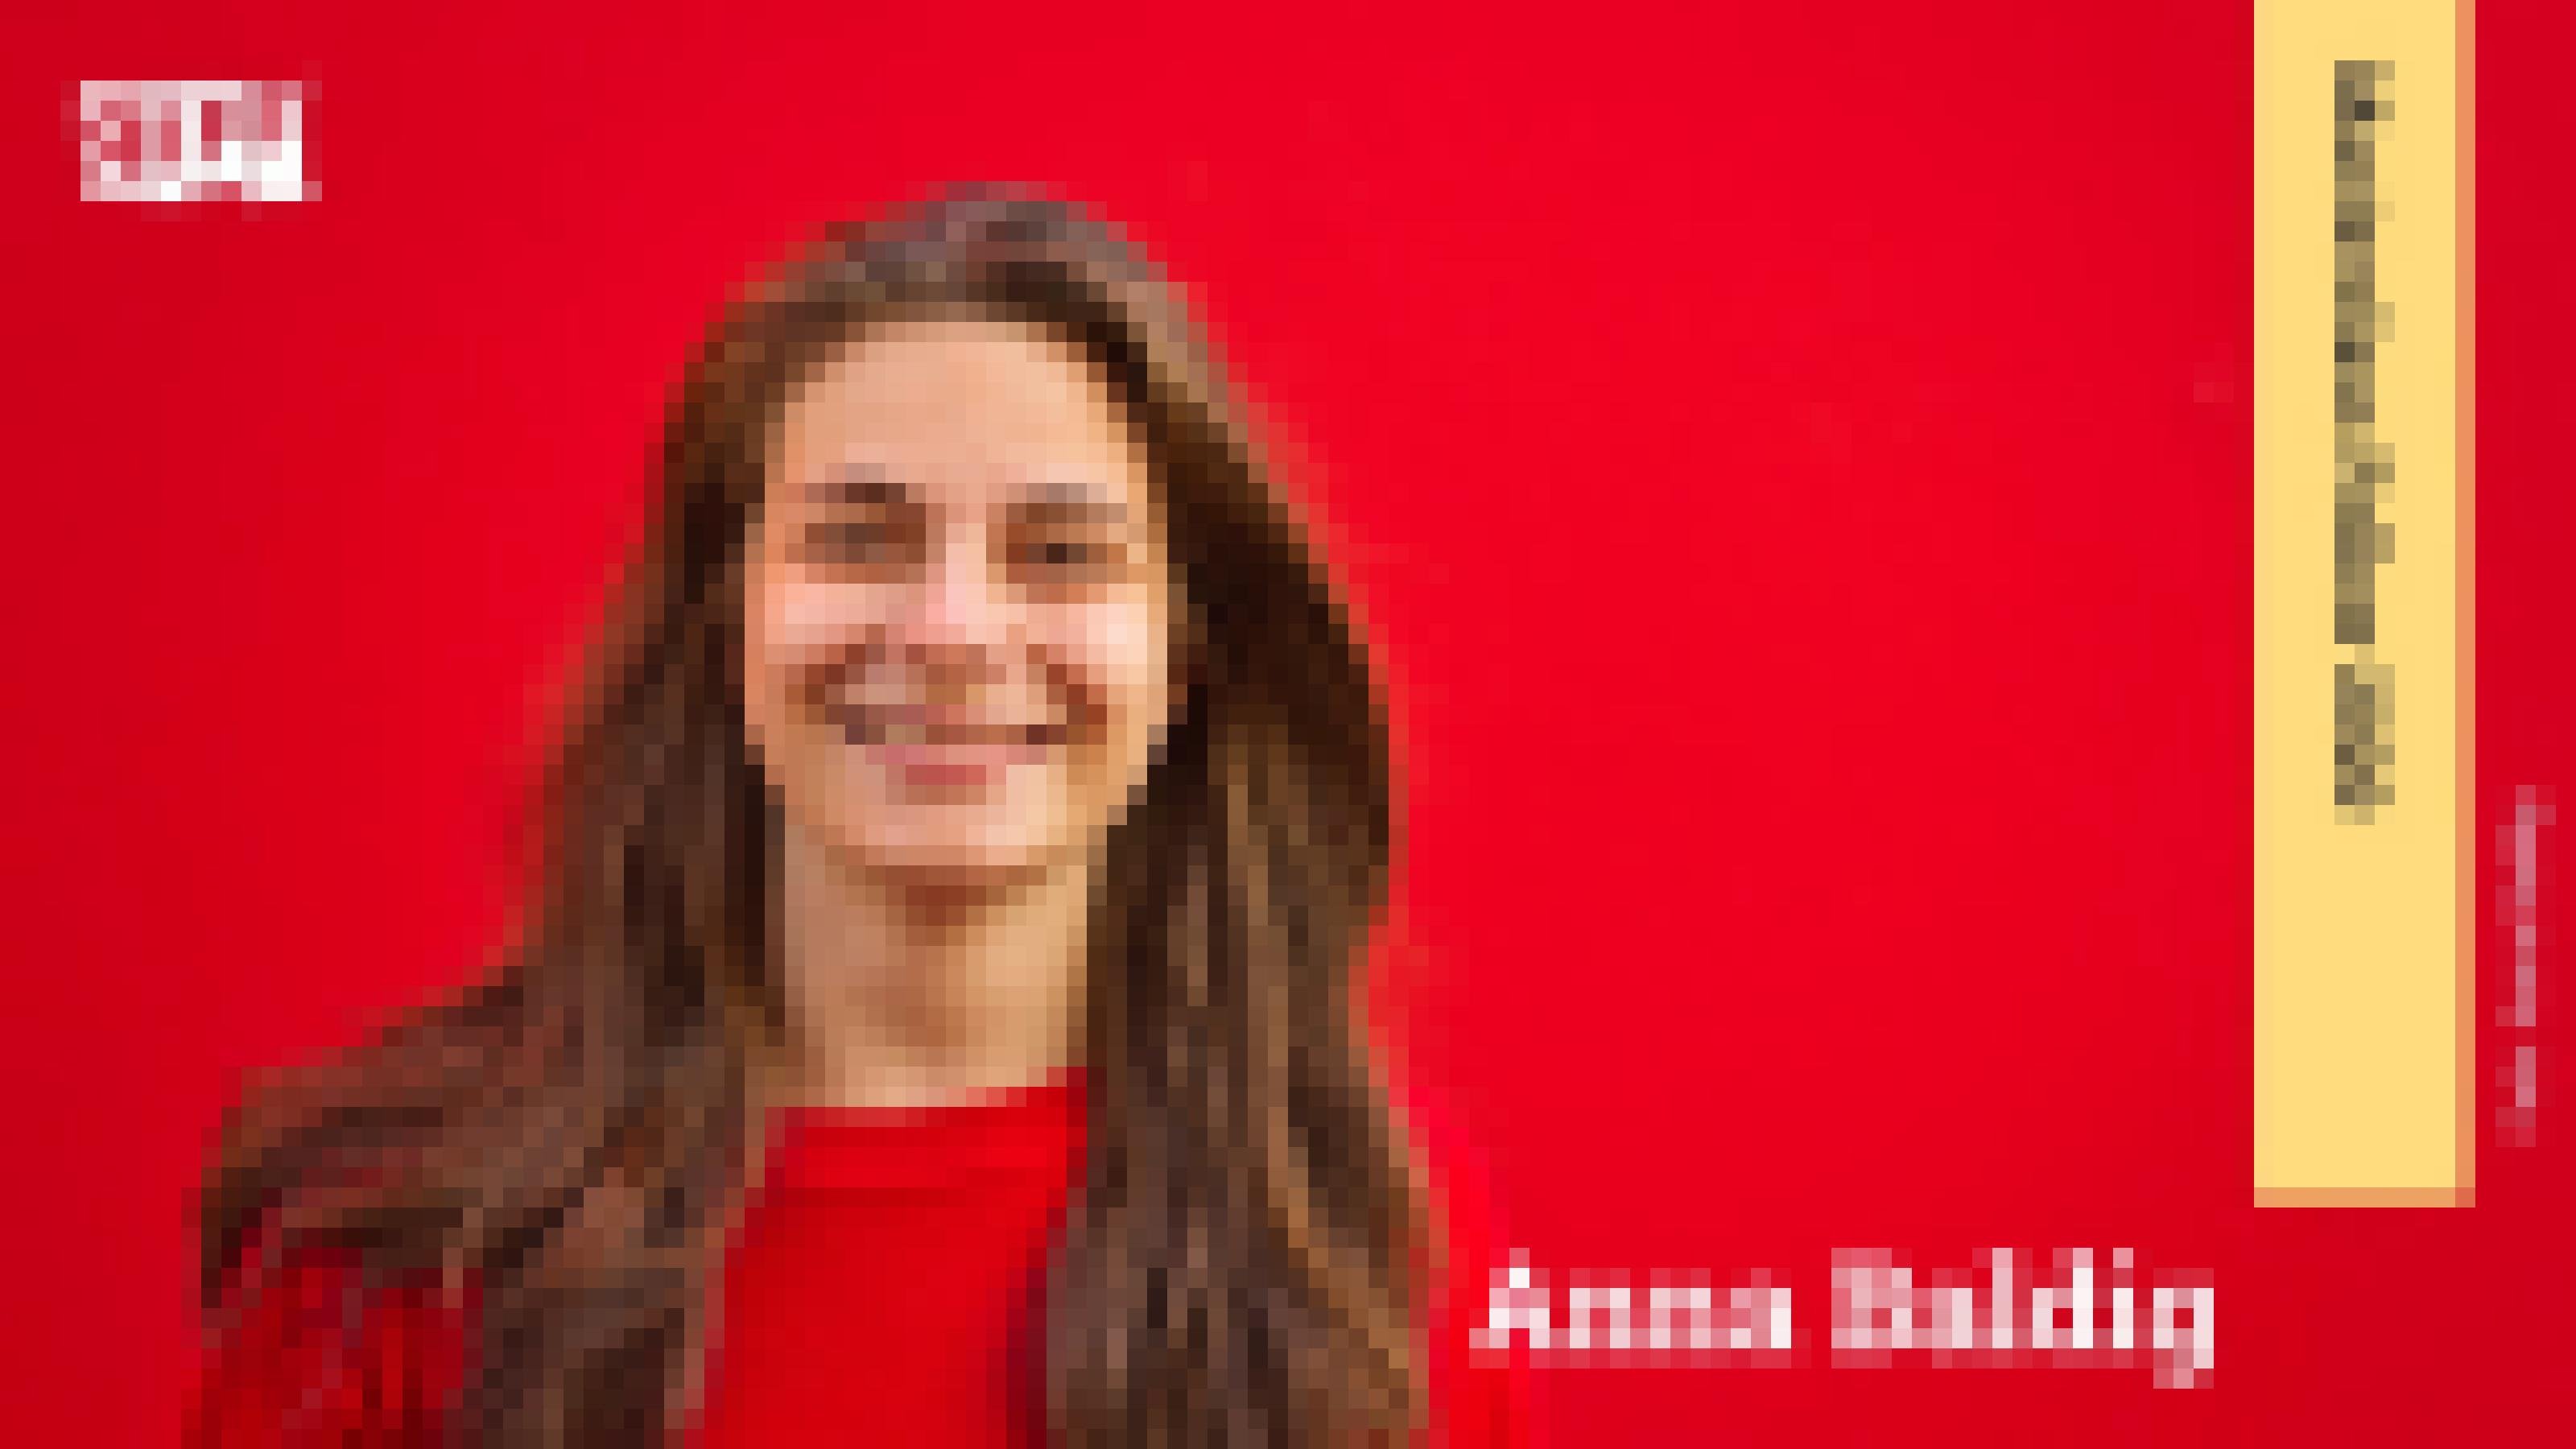 Junge Frau in rotem Pullover steht lächelnd vor einem roten Hintergrund. Der Name Anna Baldig ist neben ihr zu sehen. An der rechten Seite befindet sich ein Banner mit der Aufschrift „Masterclass Fellow 2020“